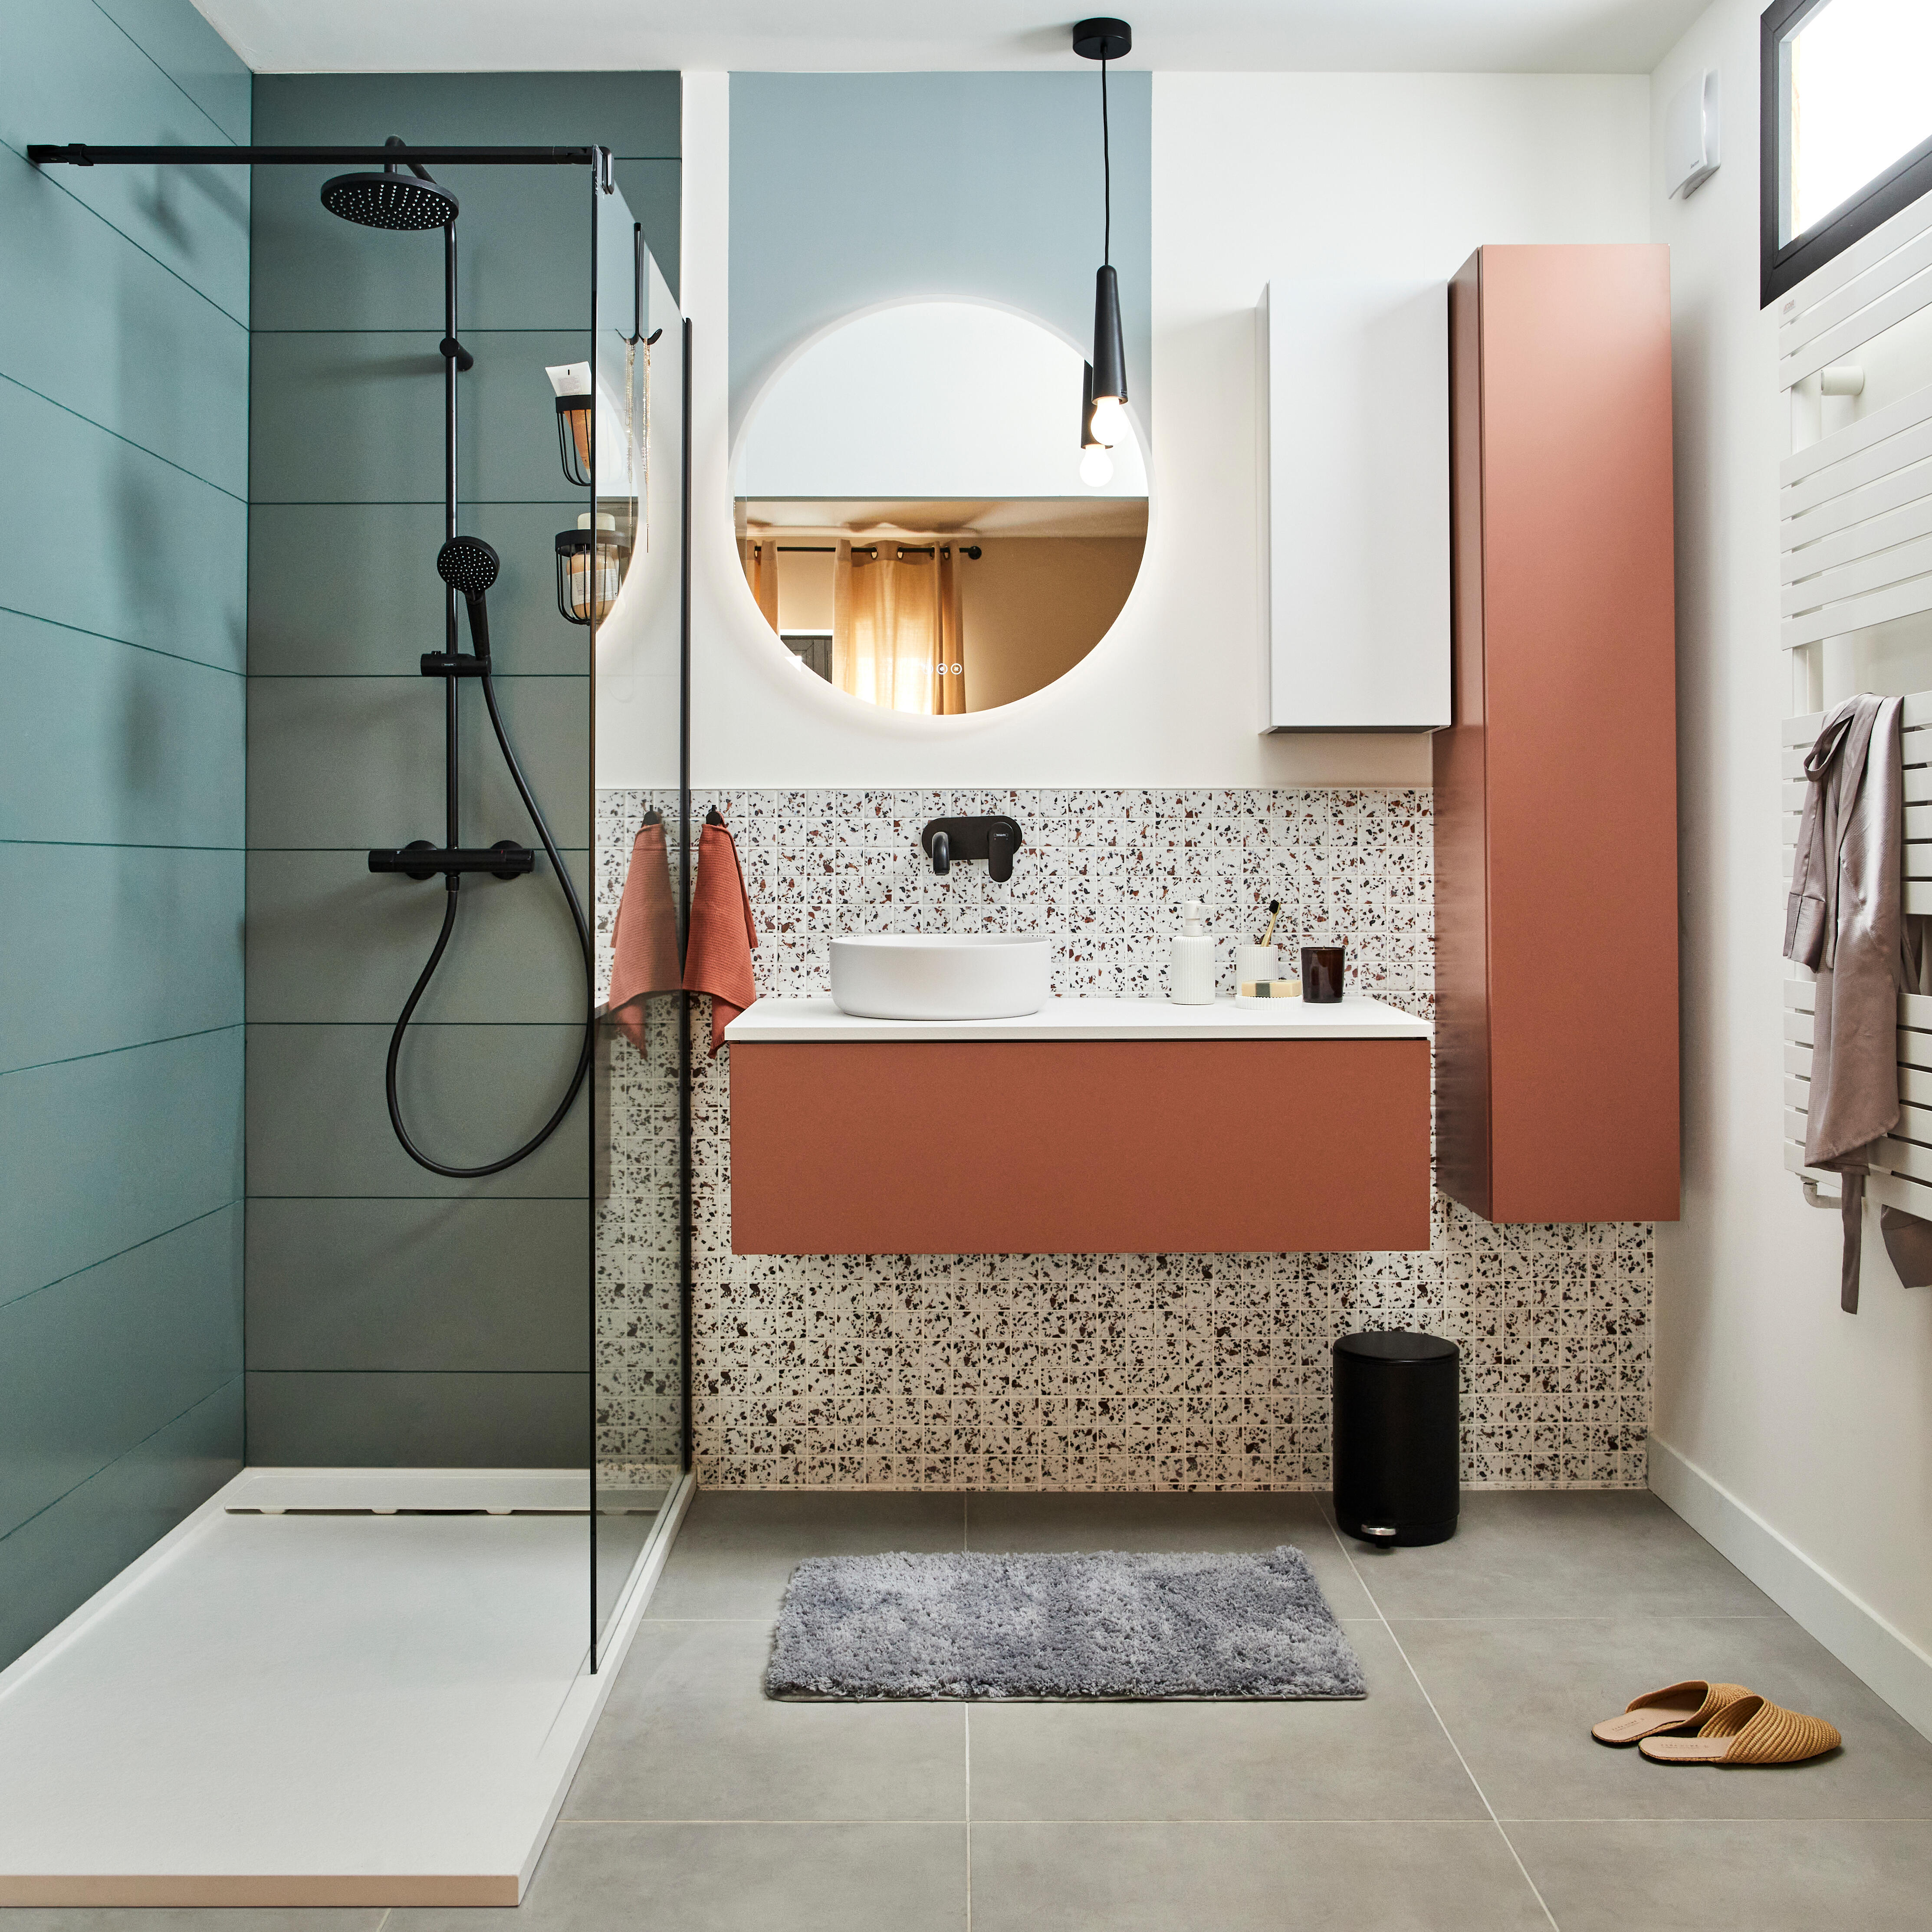 Petite salle de bain : 12 photos pour l'aménager et la décorer - Côté Maison